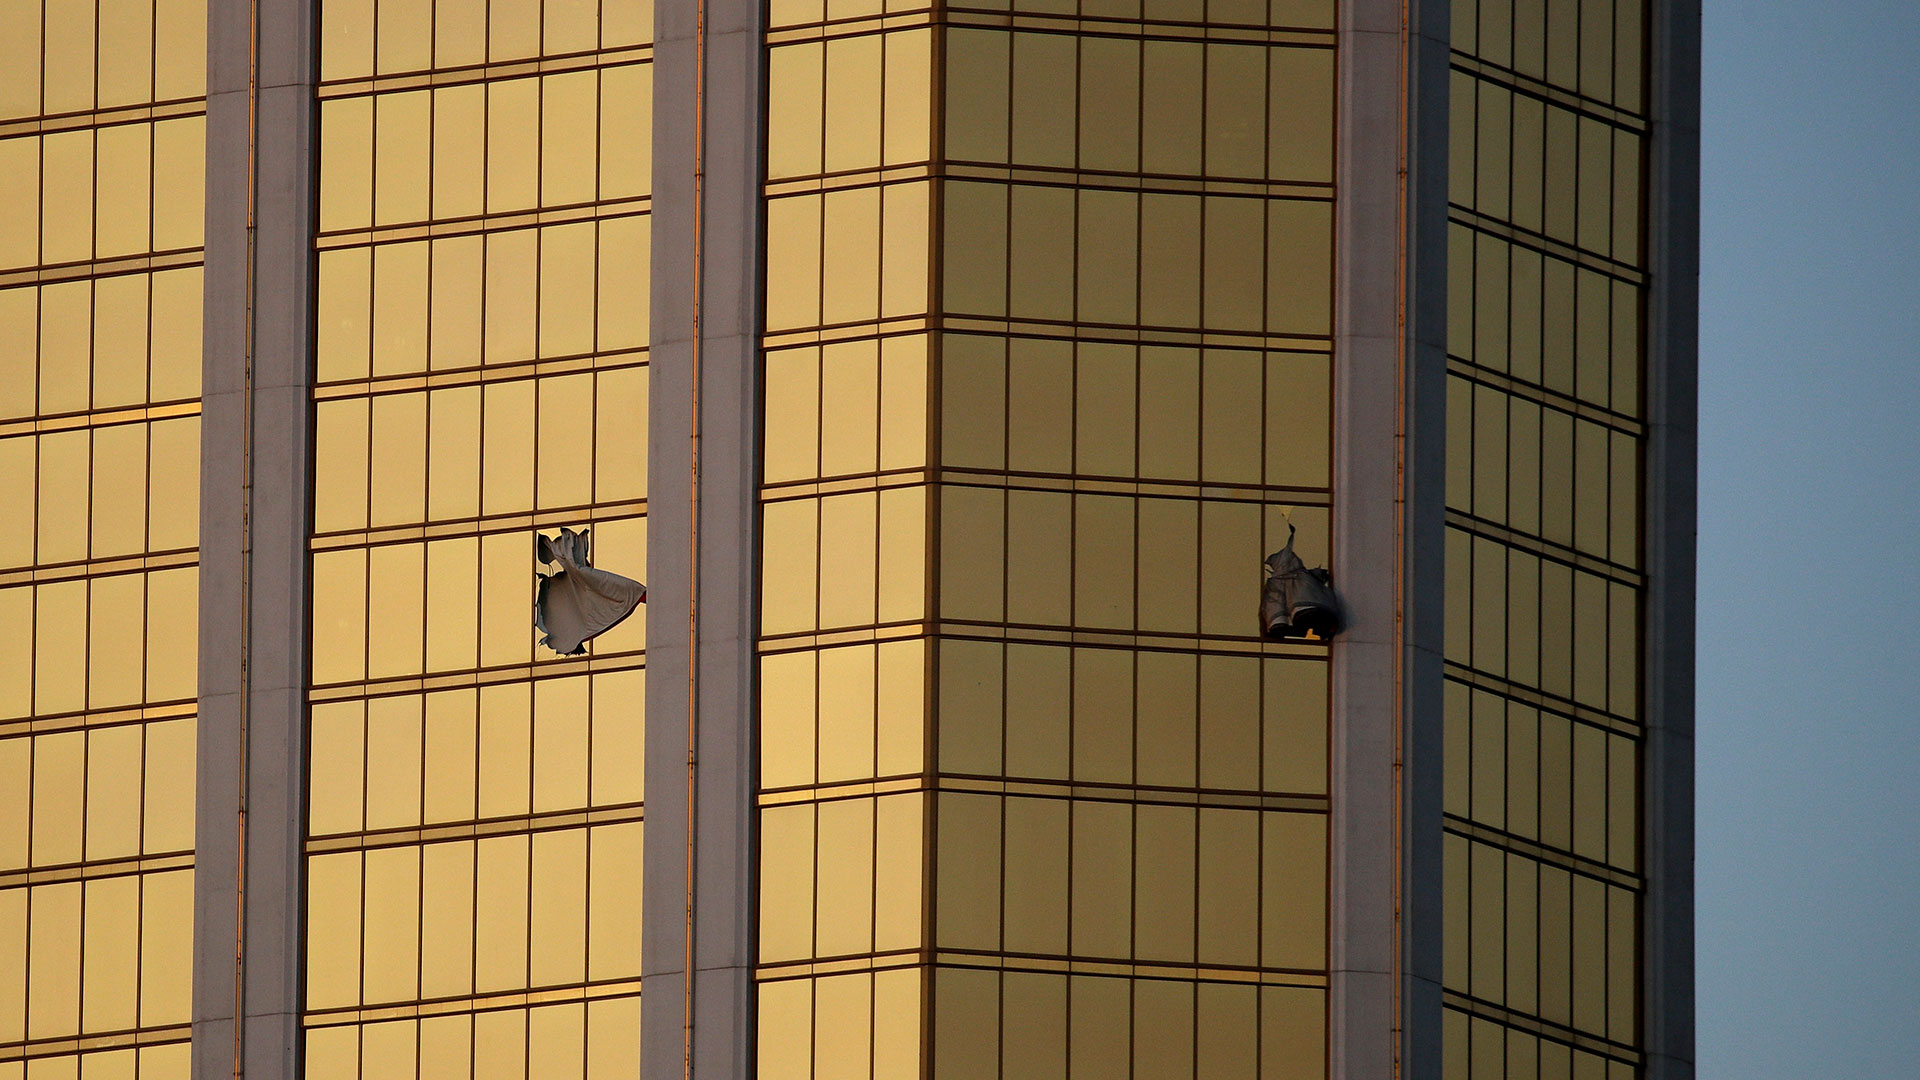 Photos: Las Vegas mass shooting